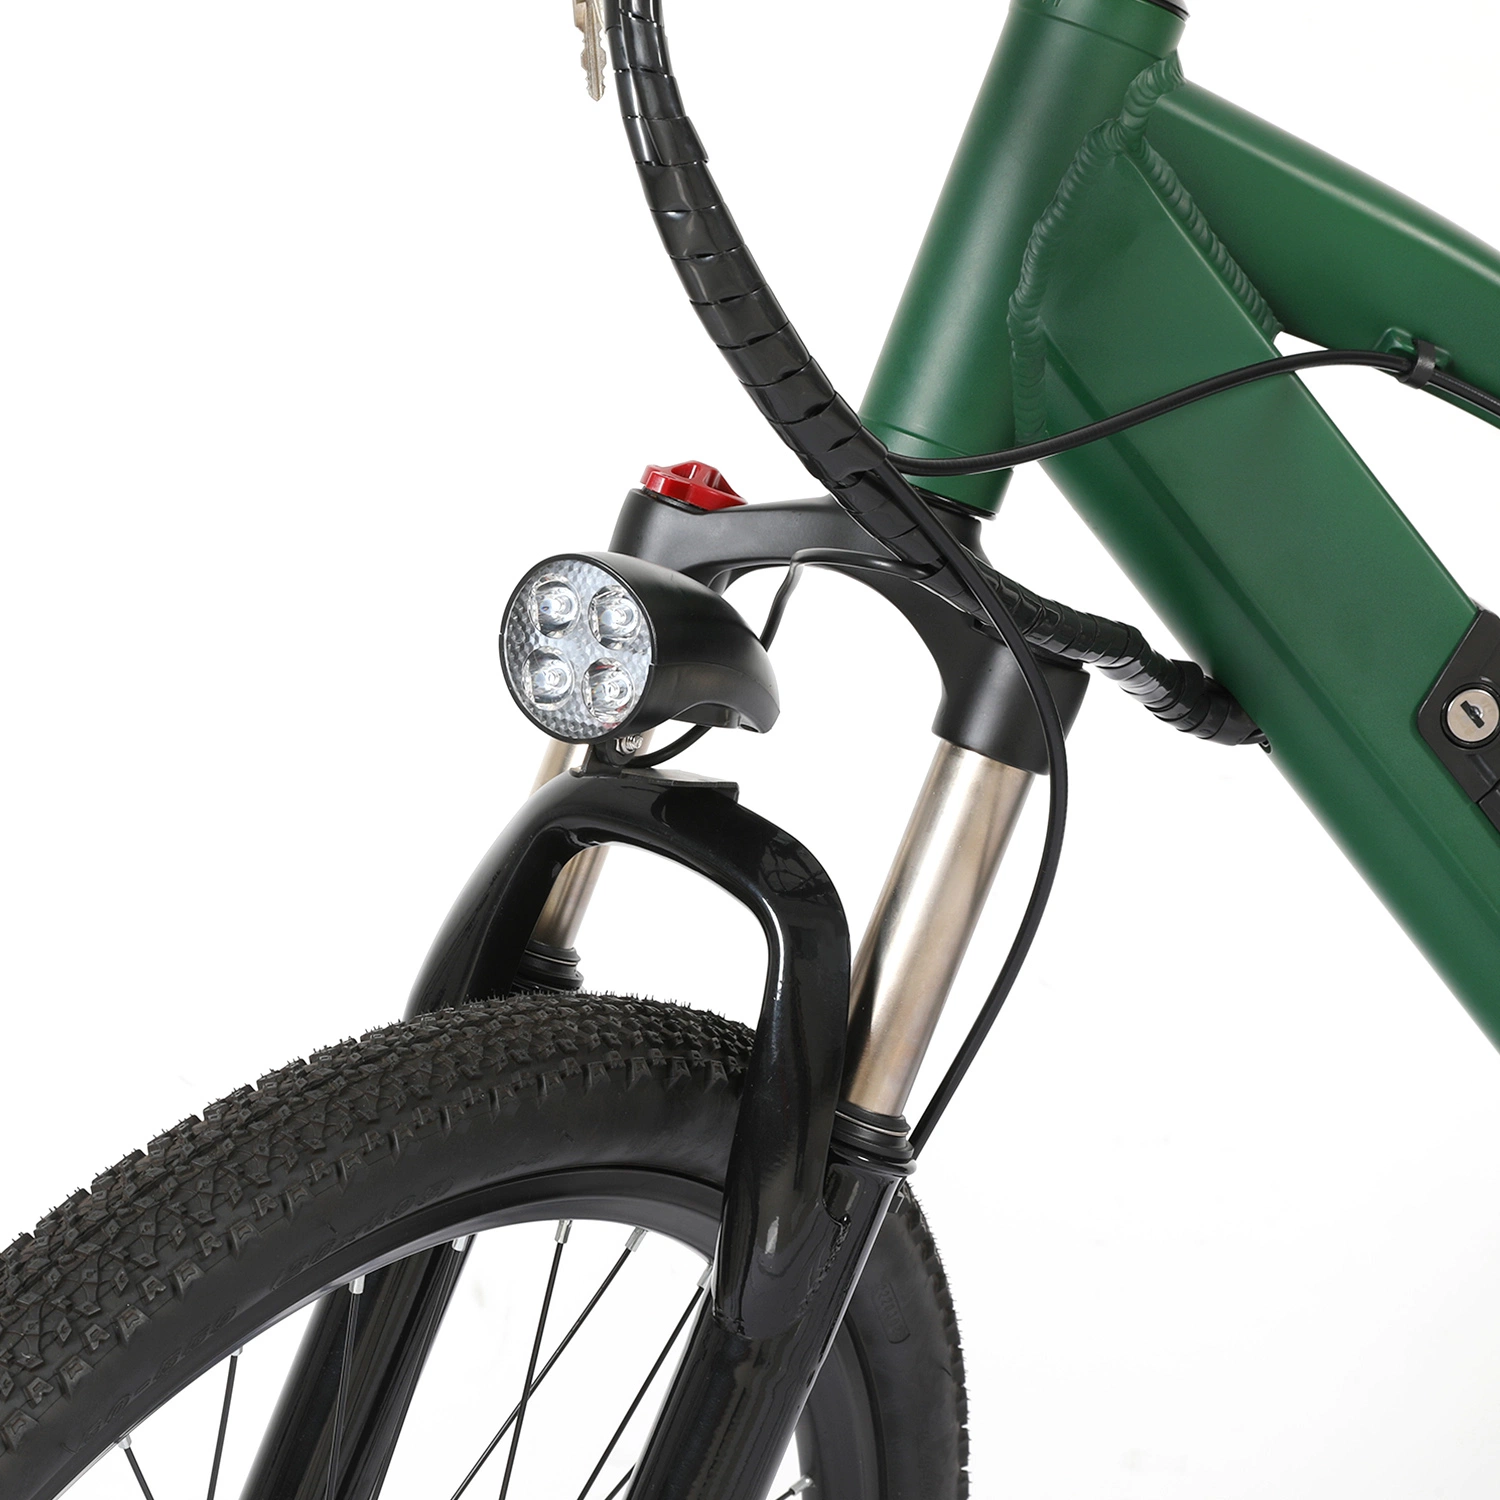 دراجة كهربائية دراجة بخارية كهربائية دراجة هوائية 26 بوصة من الدهون E-Bicycle محرك الدراجة بقدرة 500 واط وبطارية بقدرة 48 فولت بسرعة 10 أمبير في الساعة